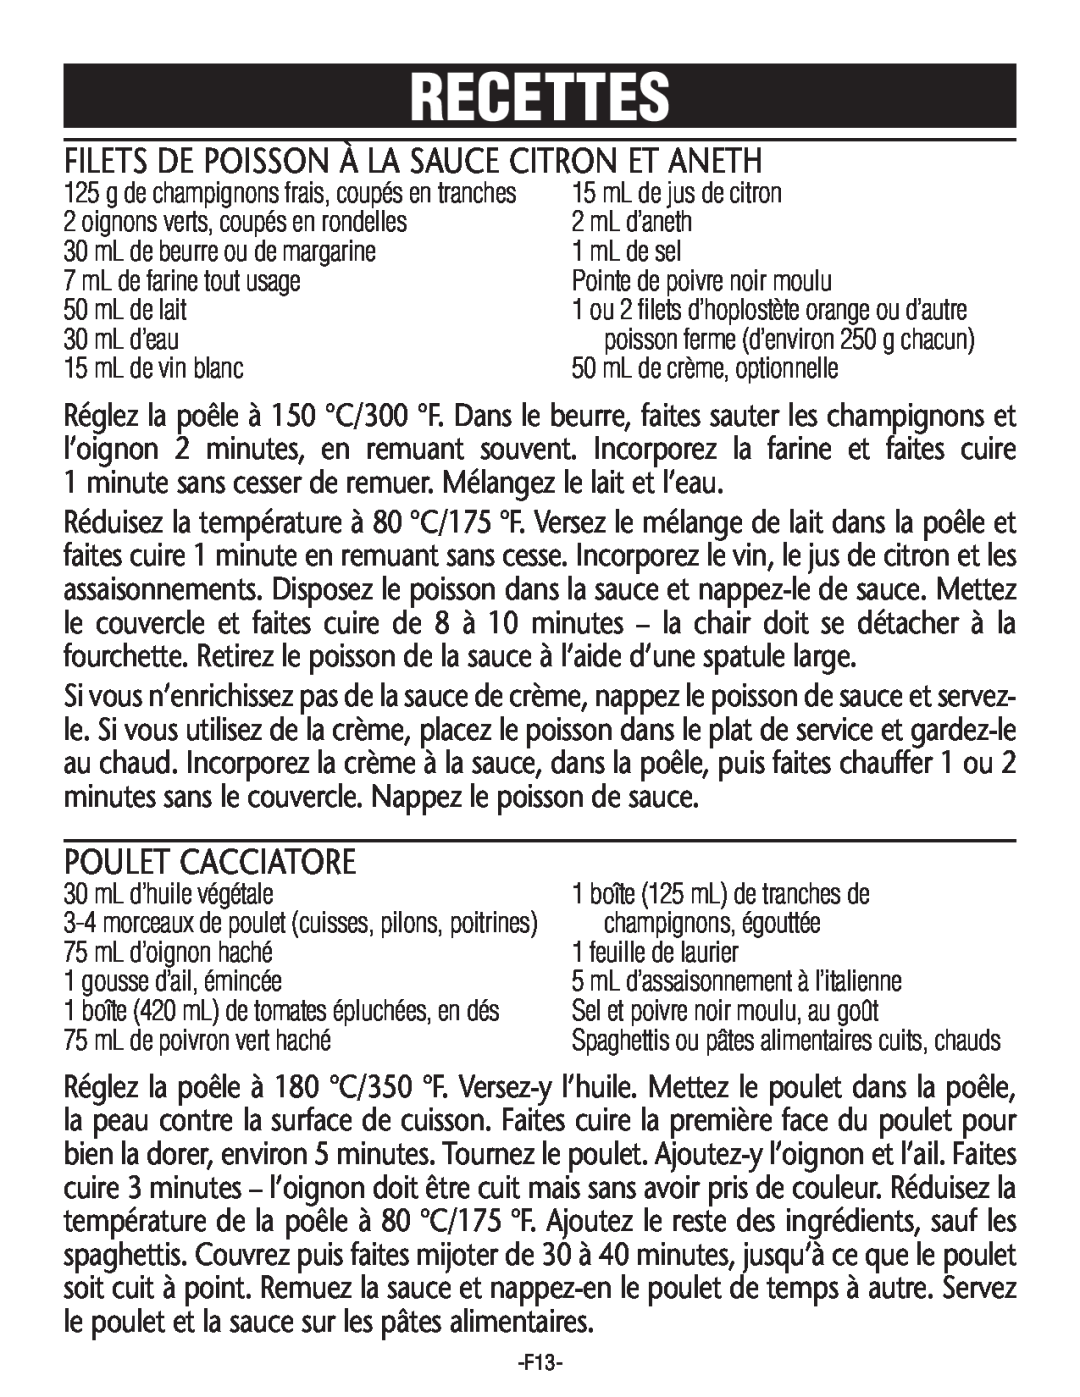 Rival S16SG-CN manual Filets De Poisson À La Sauce Citron Et Aneth, Poulet Cacciatore, Recettes 